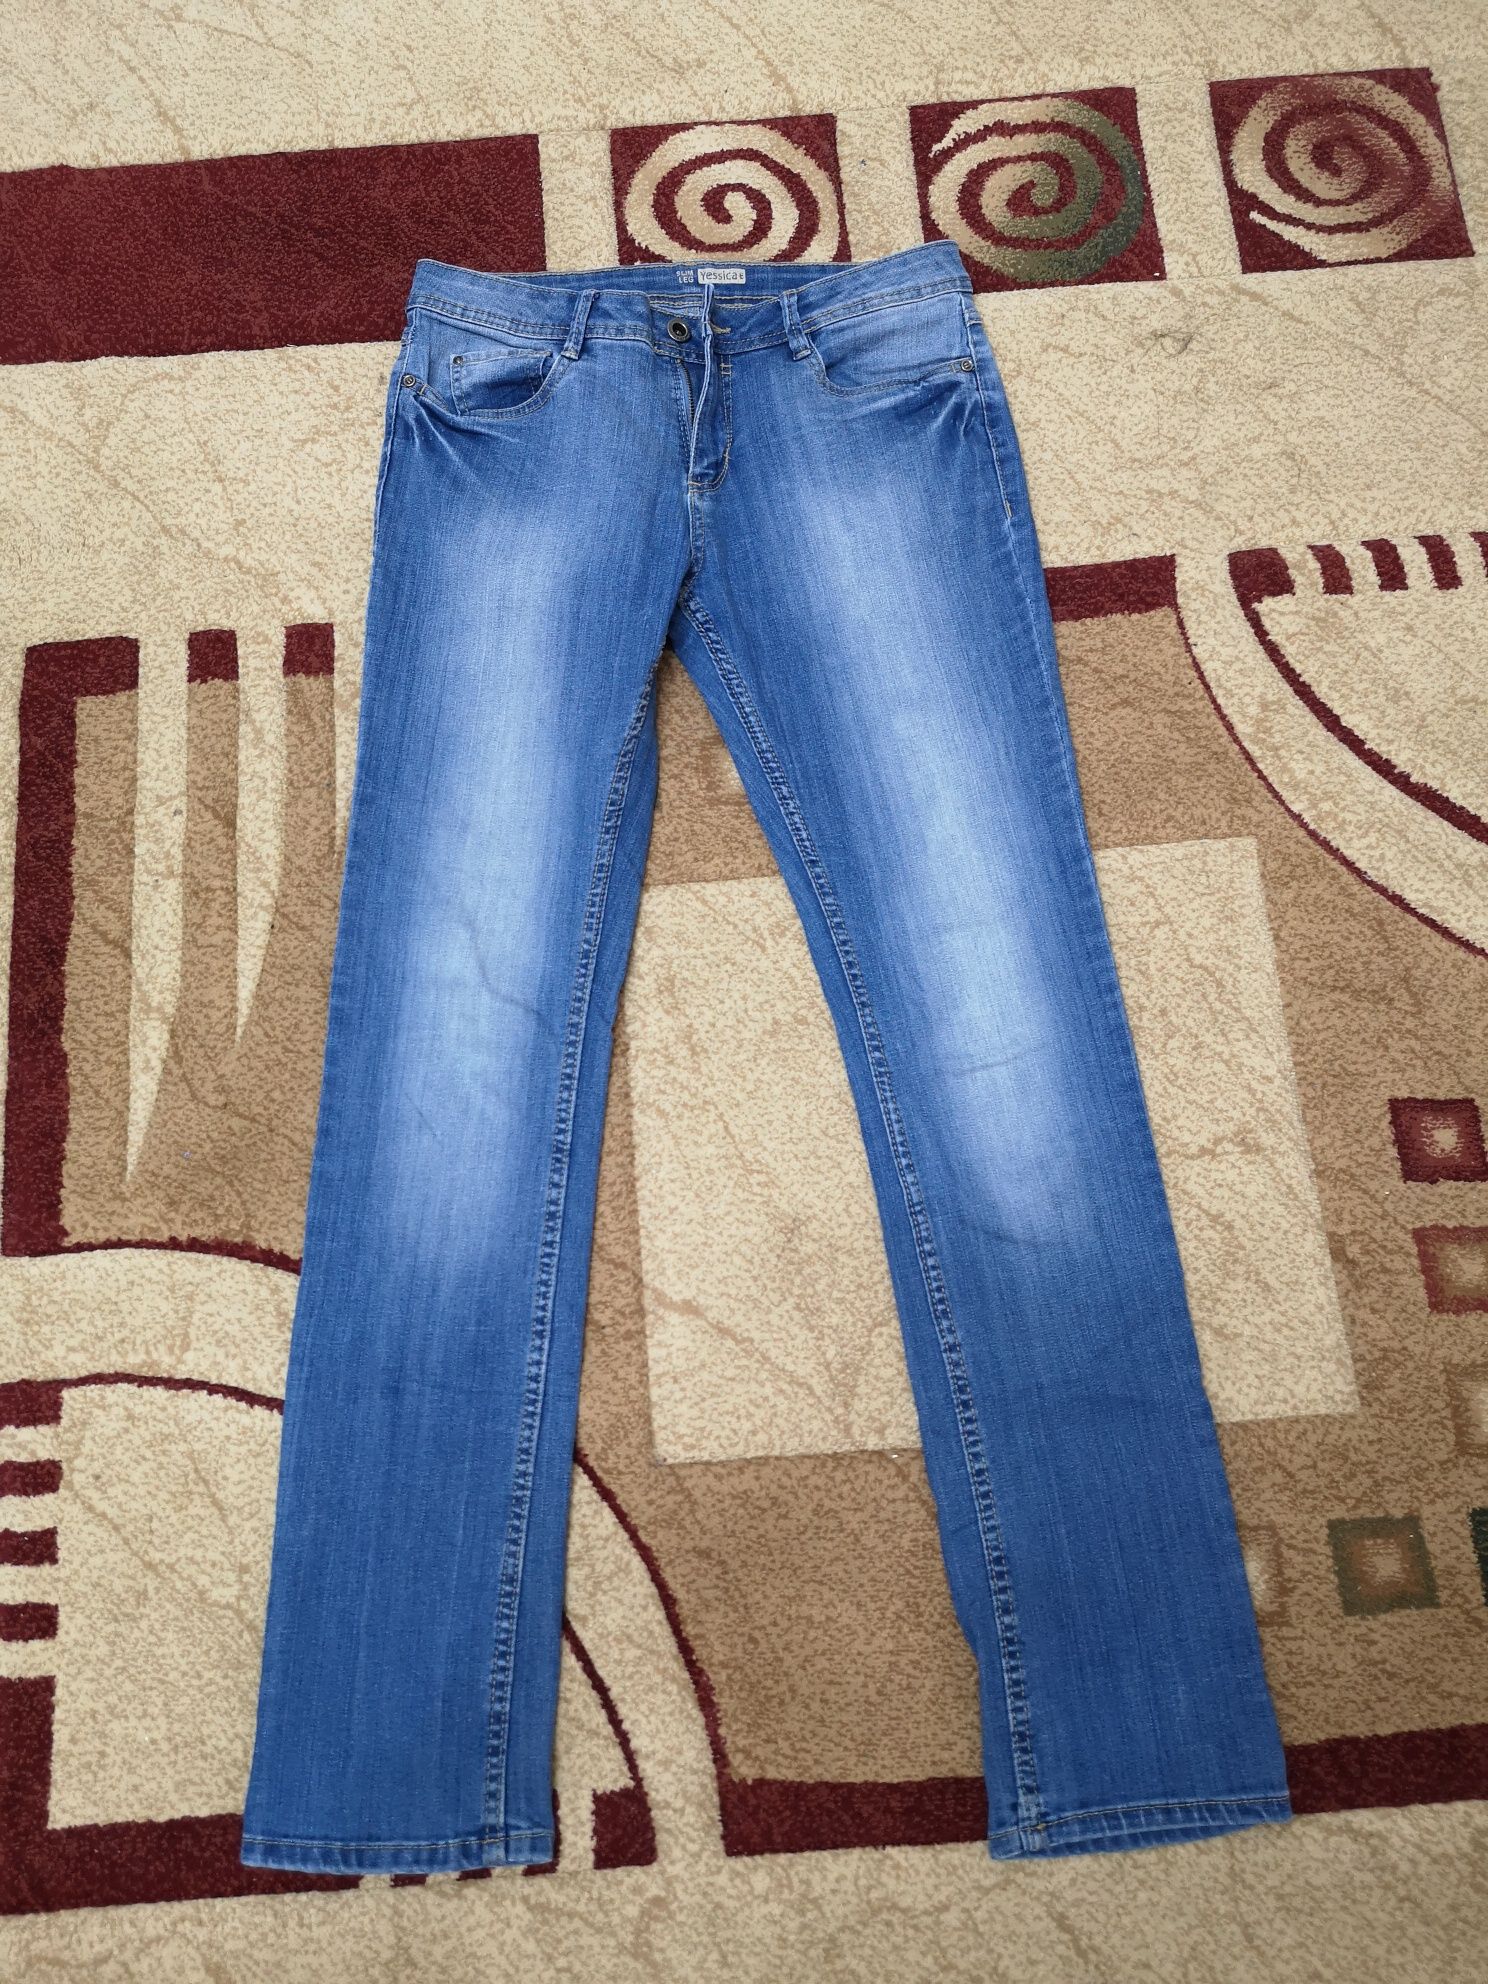 Продам джинсы производство Германия